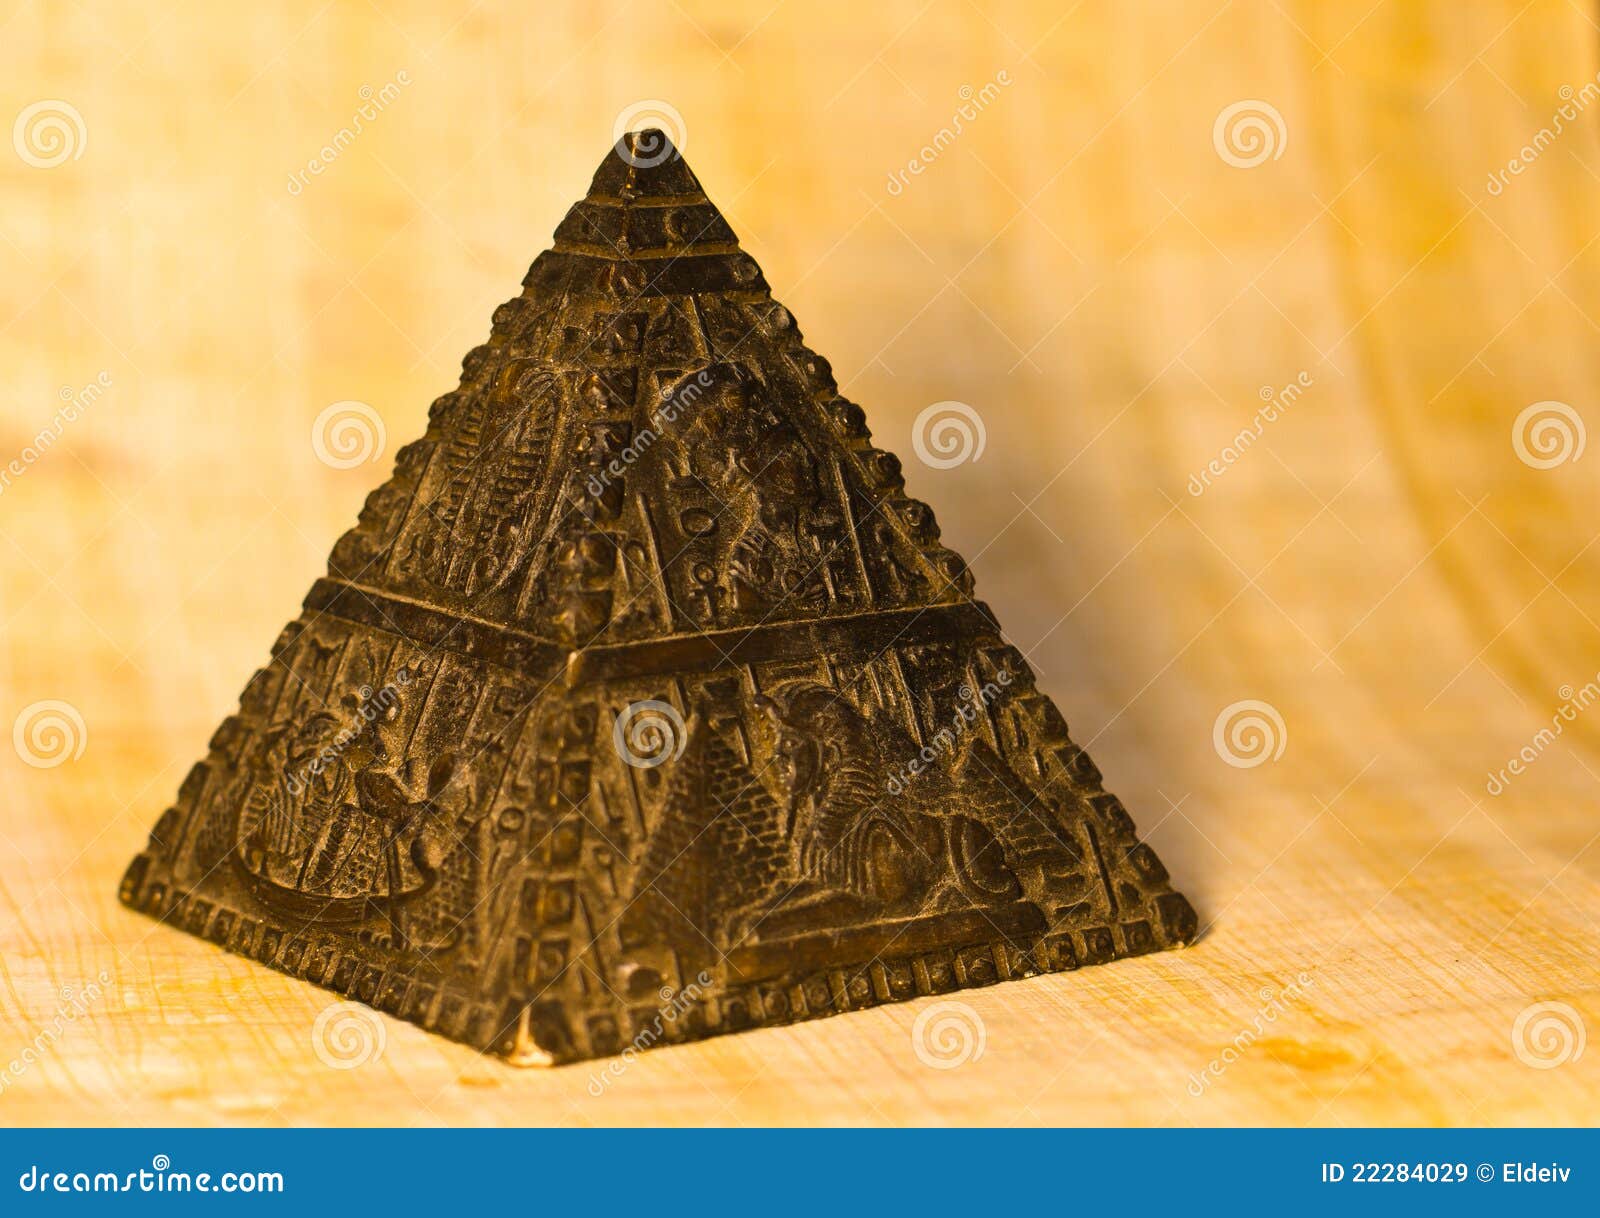 Het Beeldje Van De Piramide Van De Steen Stock Afbeelding - Image of ...